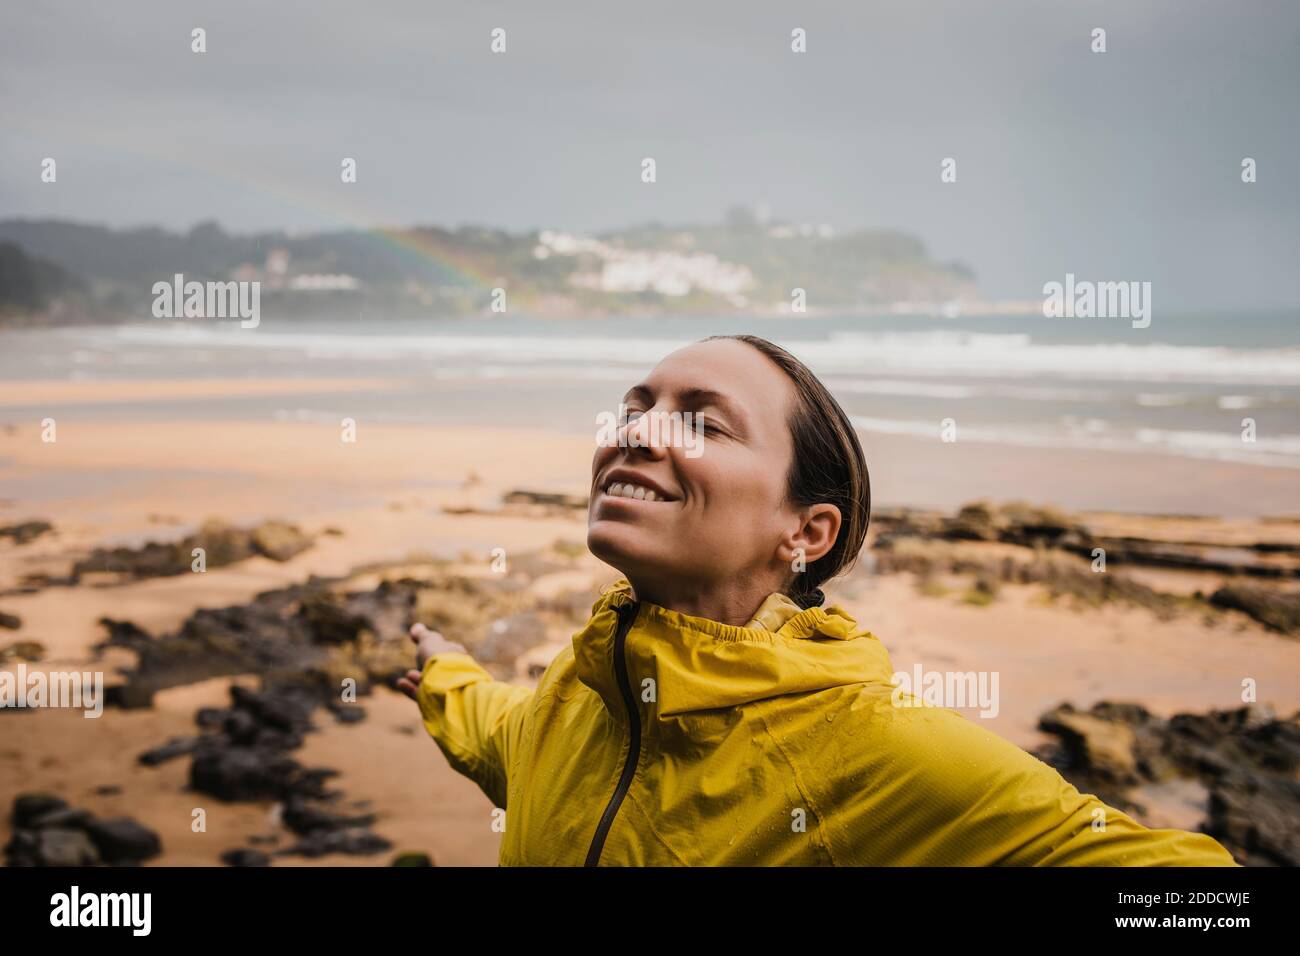 Lächelnde Frau in Regenmantel am Strand während der Regenzeit Stockfoto